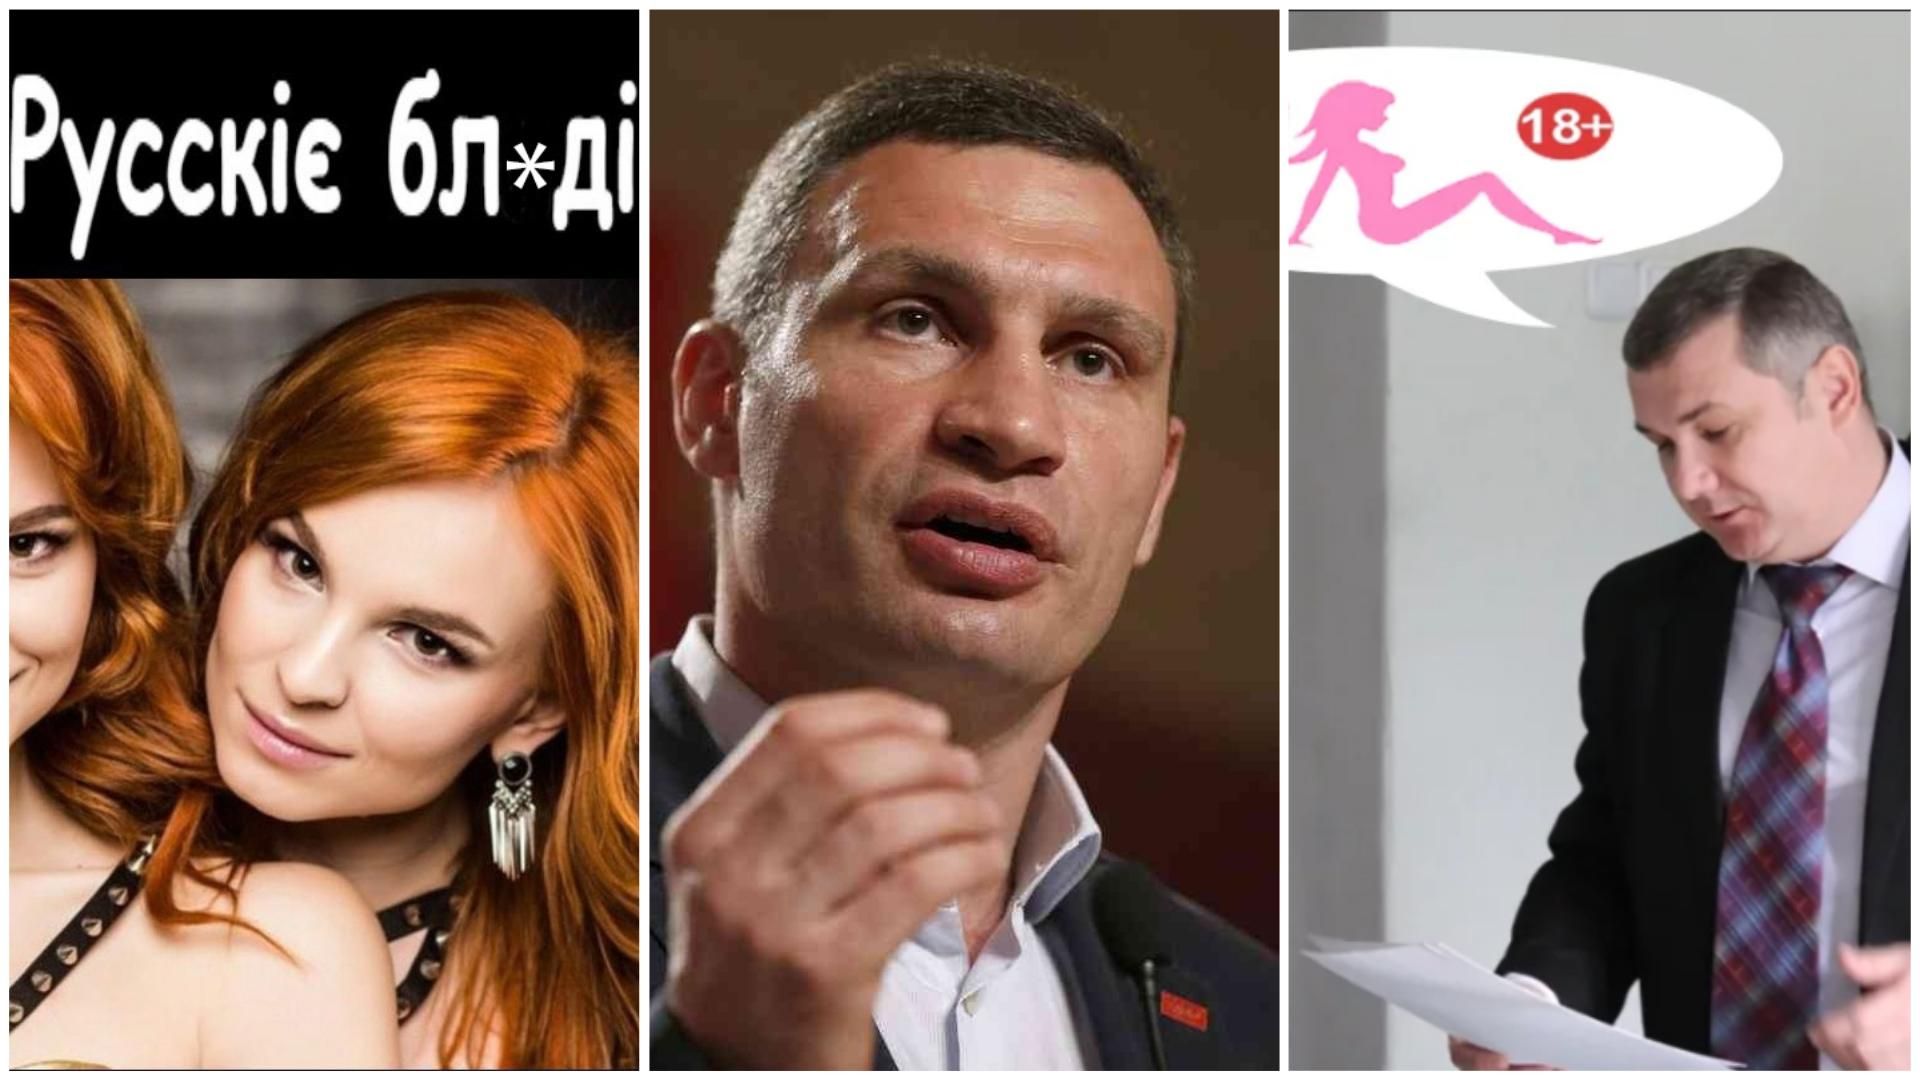 Самые смешные мемы недели: "Русские бл*ди" на Евровидении, Кличко и каждый 2-й, порно в облраде